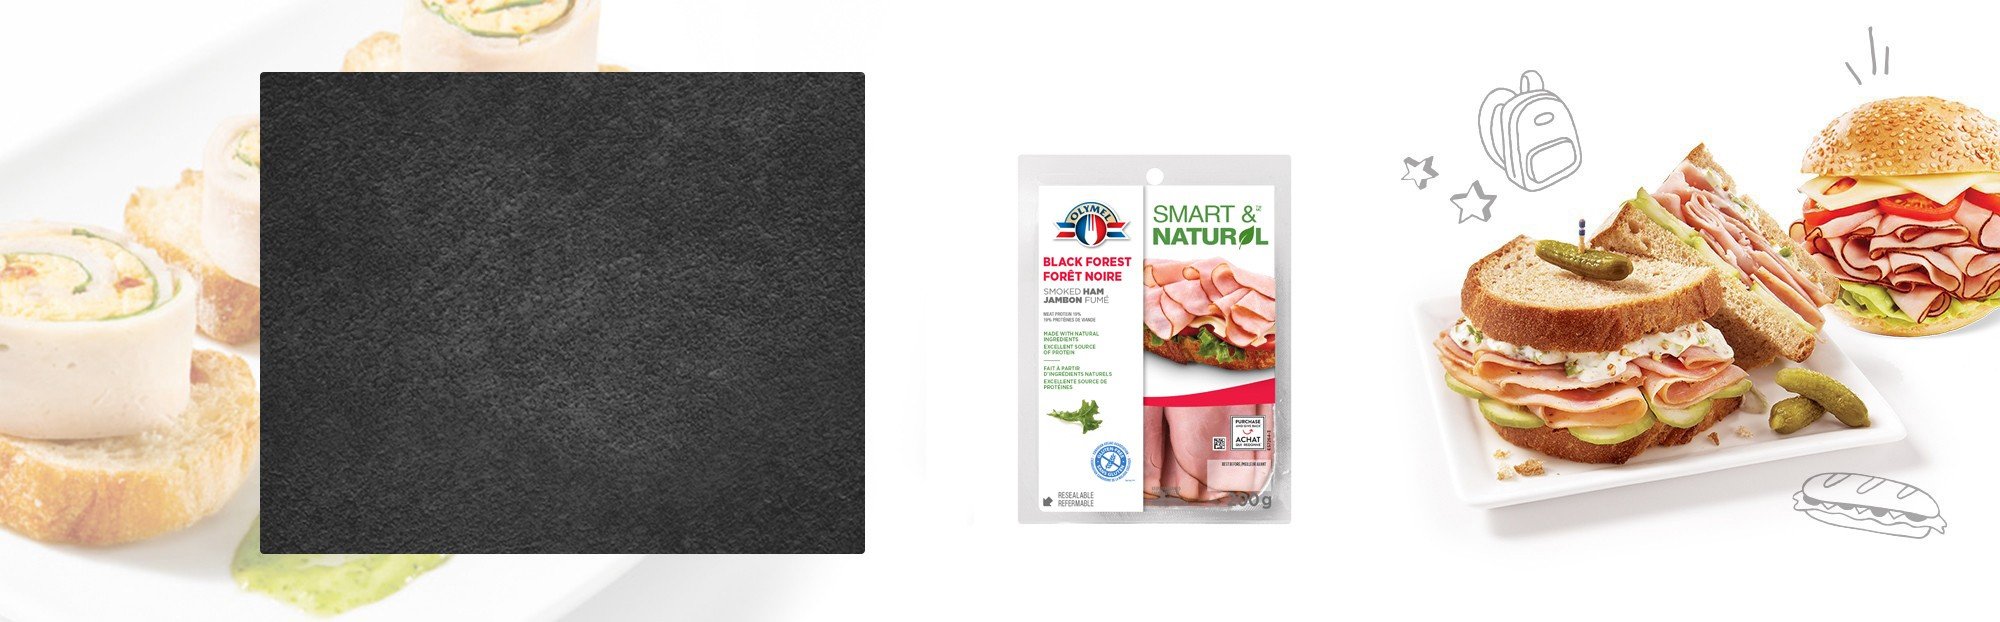 Shaved Black Forest Smoked Ham Olymel Smart & Natural